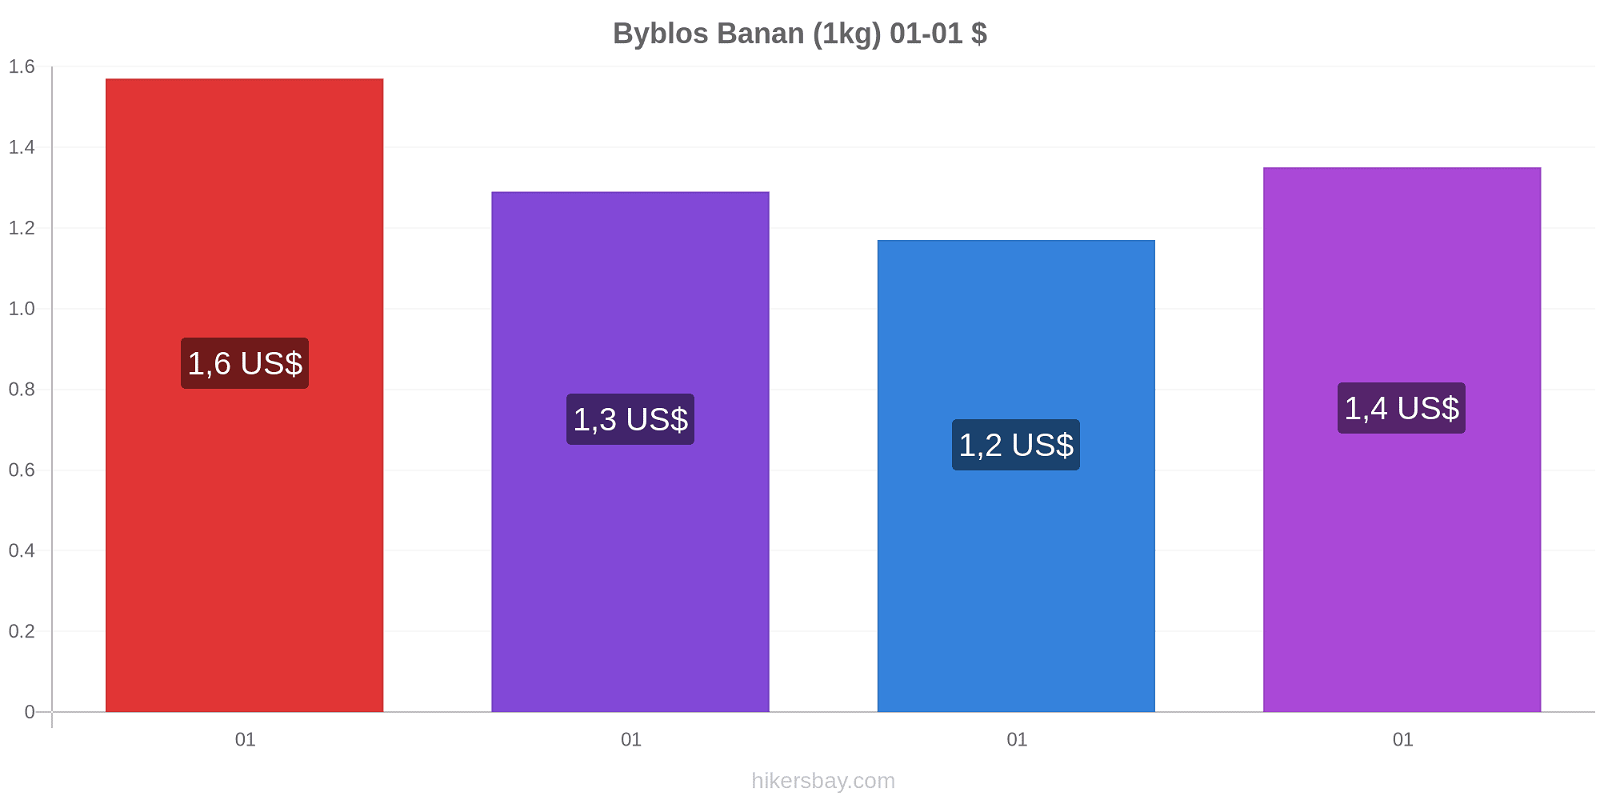 Byblos prisförändringar Banan (1kg) hikersbay.com